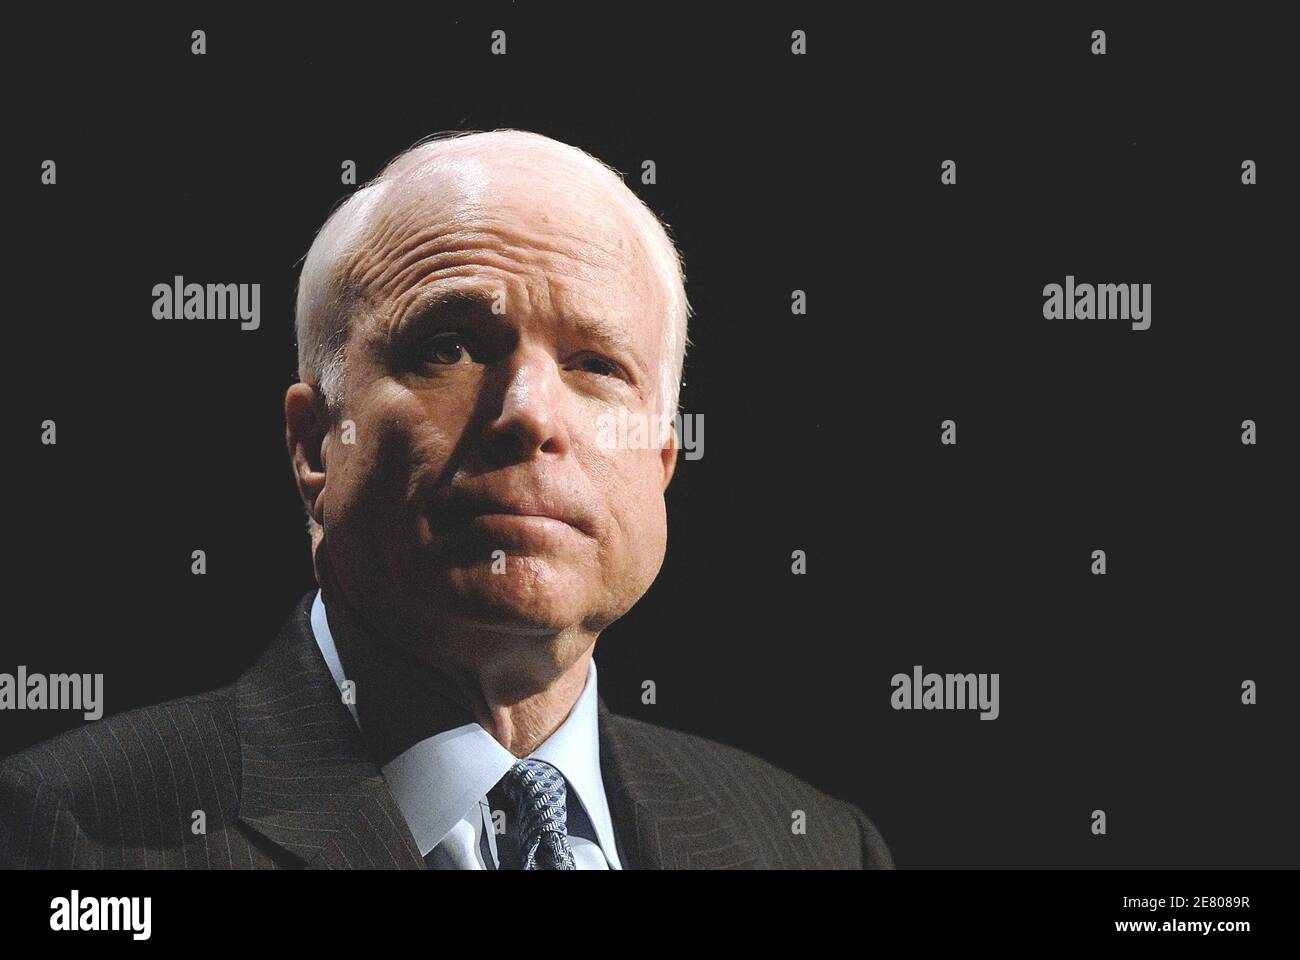 Le candidat républicain à la présidence, le sénateur John McCain (R-Arizona), prononce un discours sur la sécurité énergétique et l'environnement aux États-Unis le 23 avril 2007 à Washigton DC, aux États-Unis. Photo par Olivier Dlouliery/ABACAPRESS.COM Banque D'Images